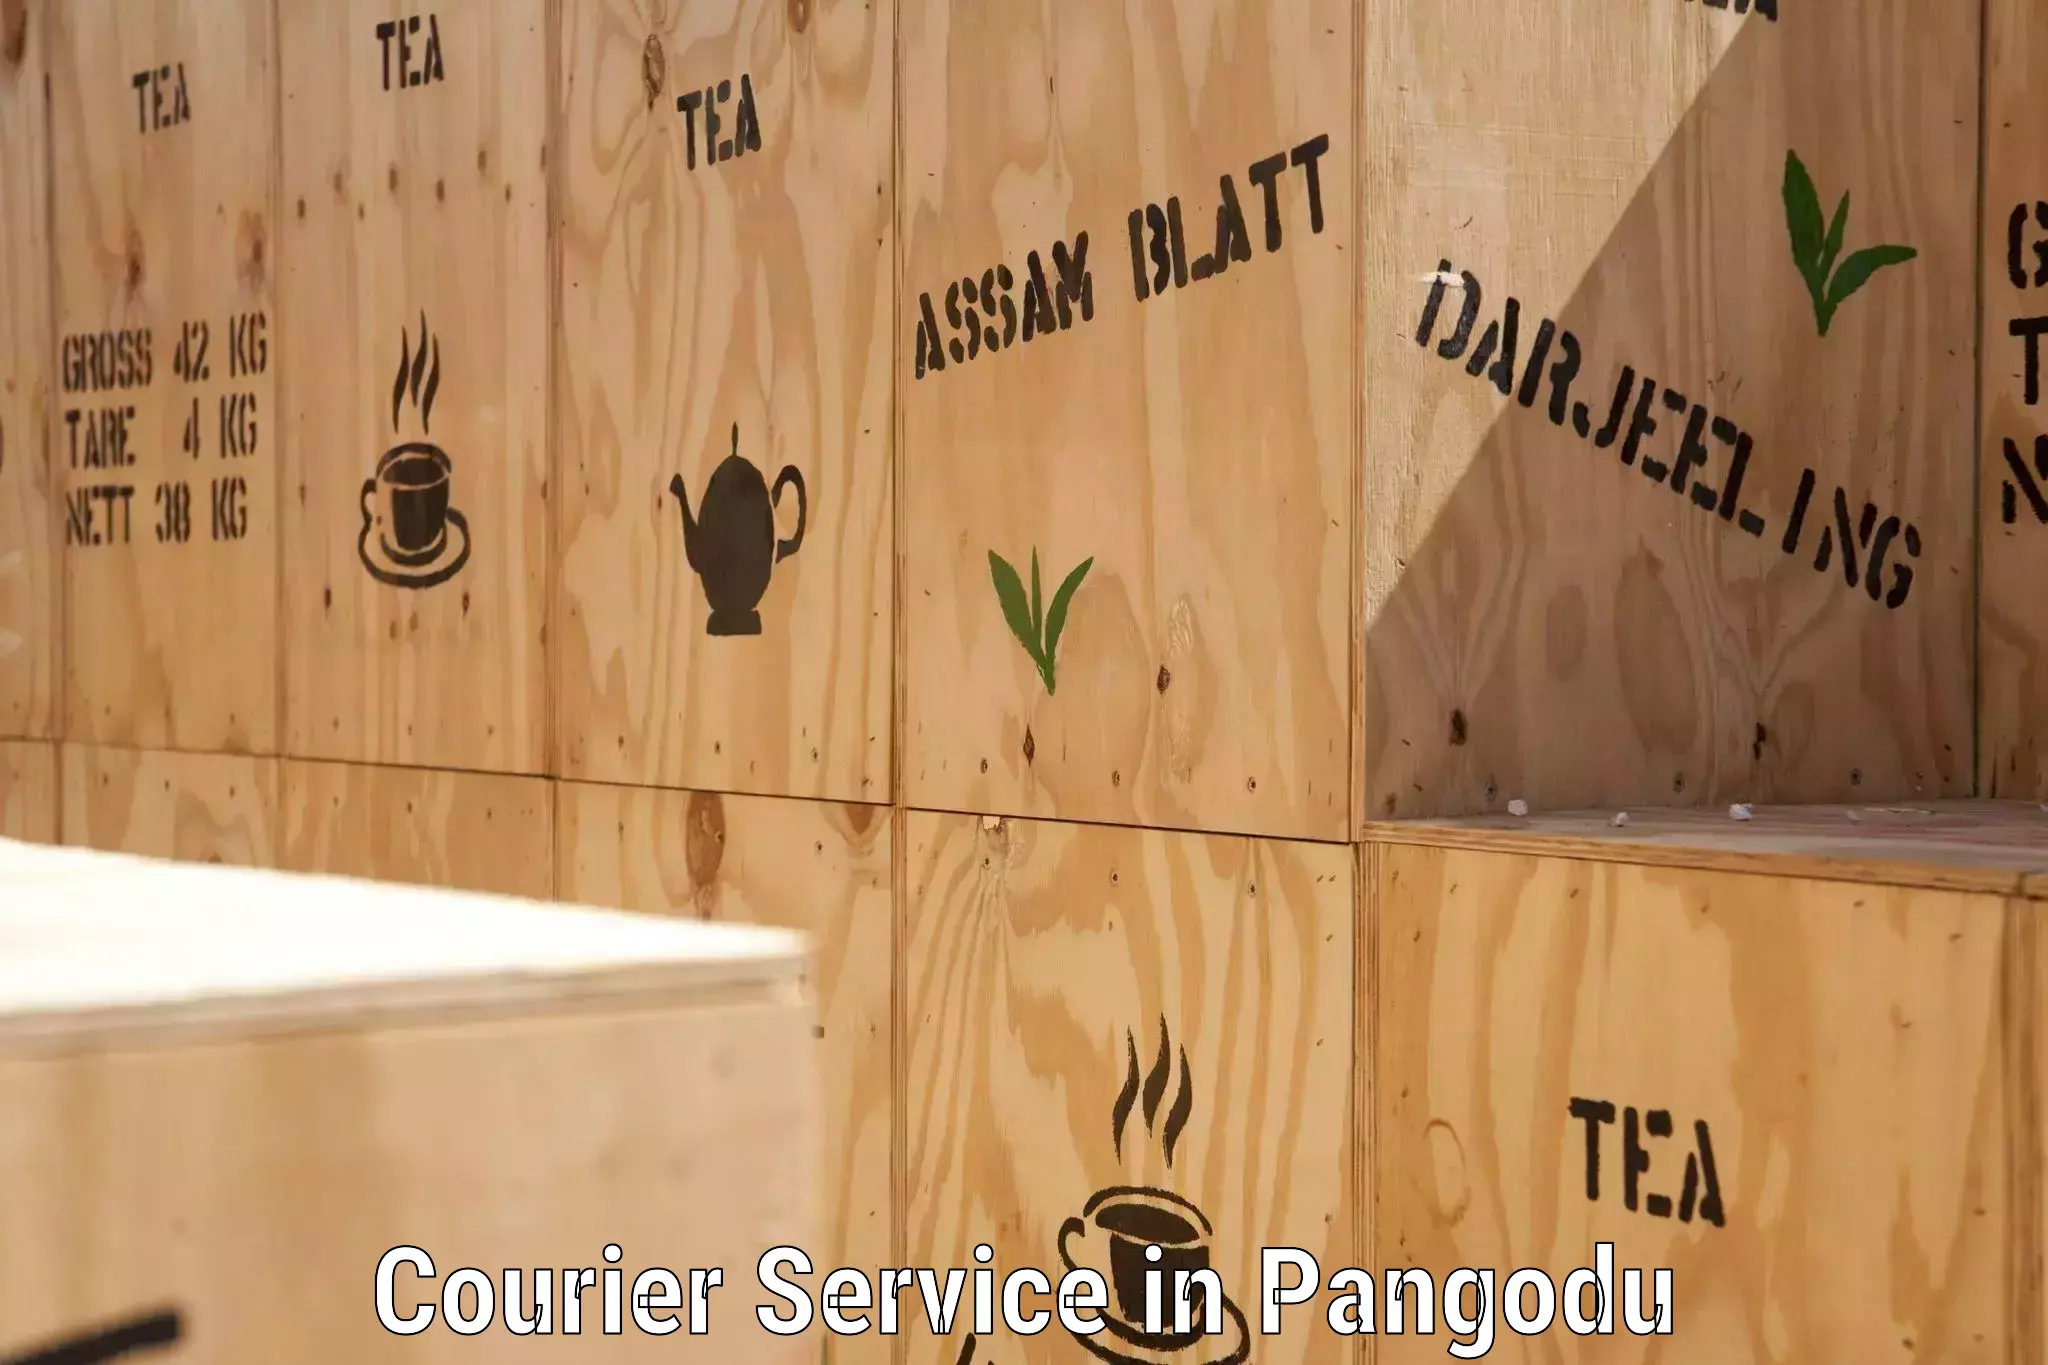 Customer-centric shipping in Pangodu